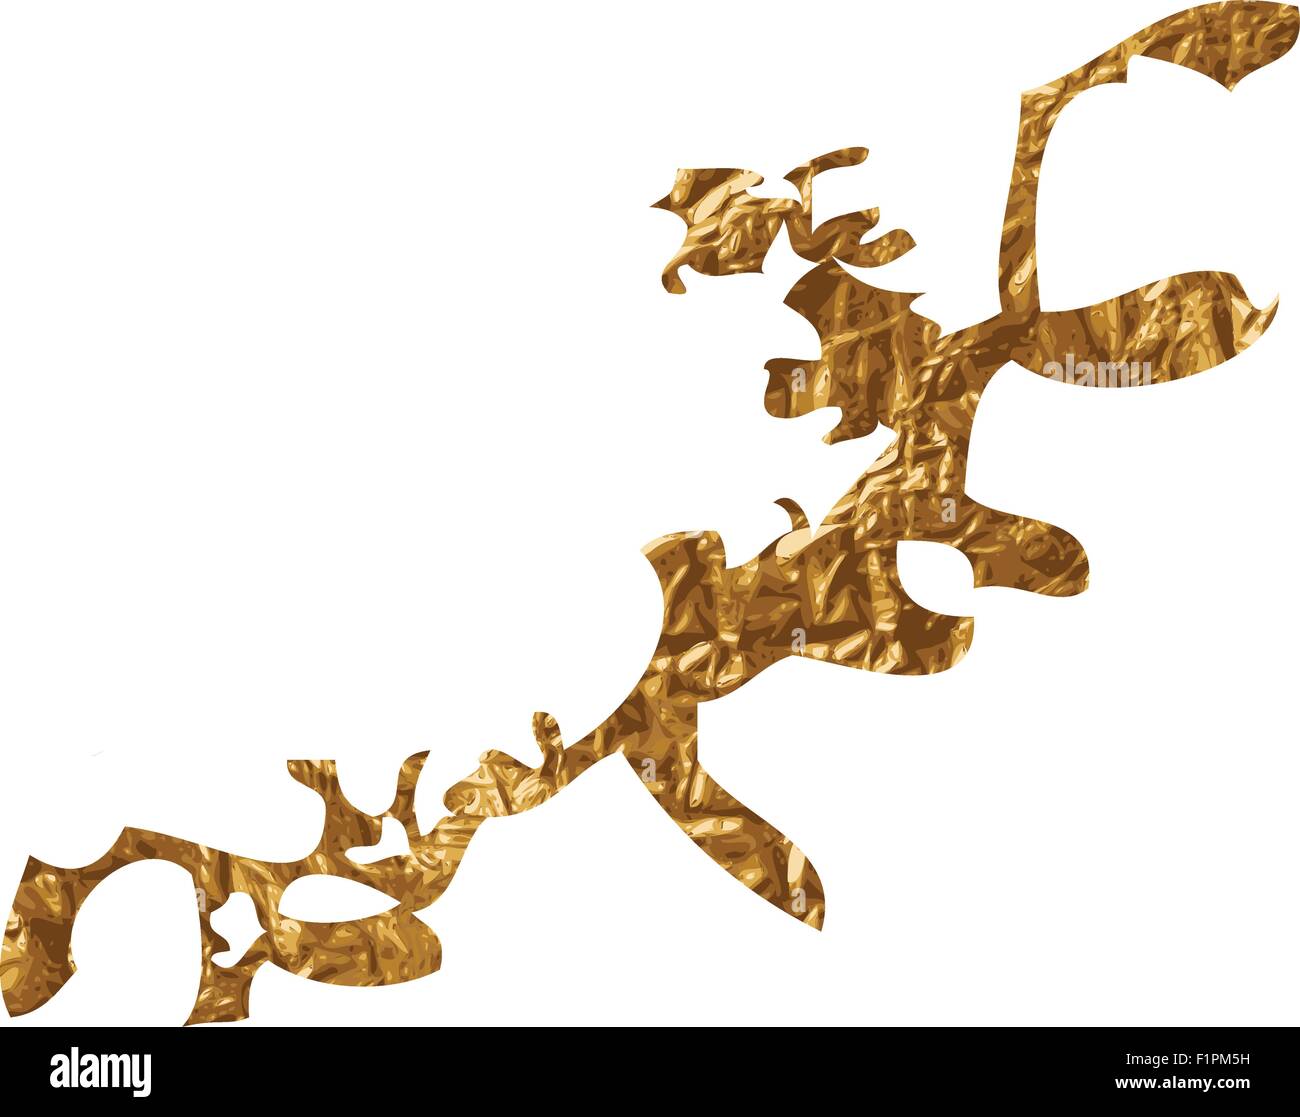 Goldene inky Grunge Splash Vektor-illustration Stock Vektor